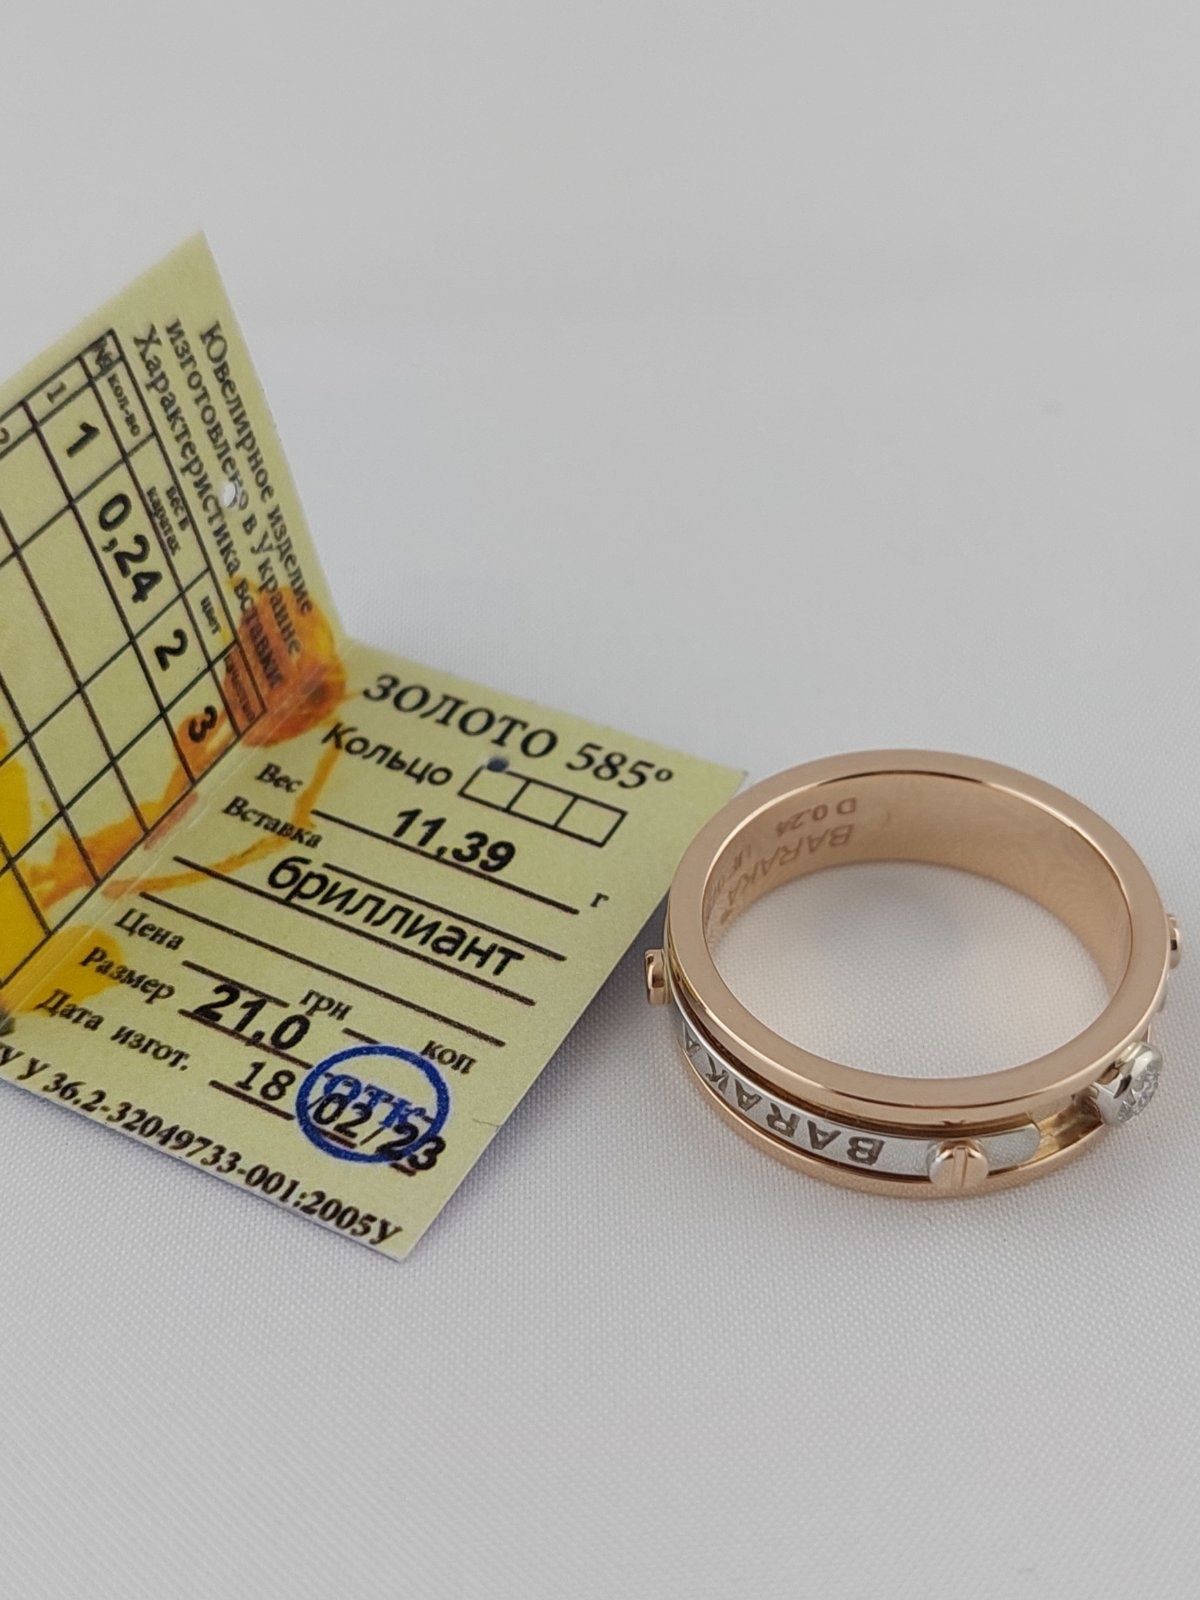 Золотое кольцо с бриллиантом в стиле Baraka